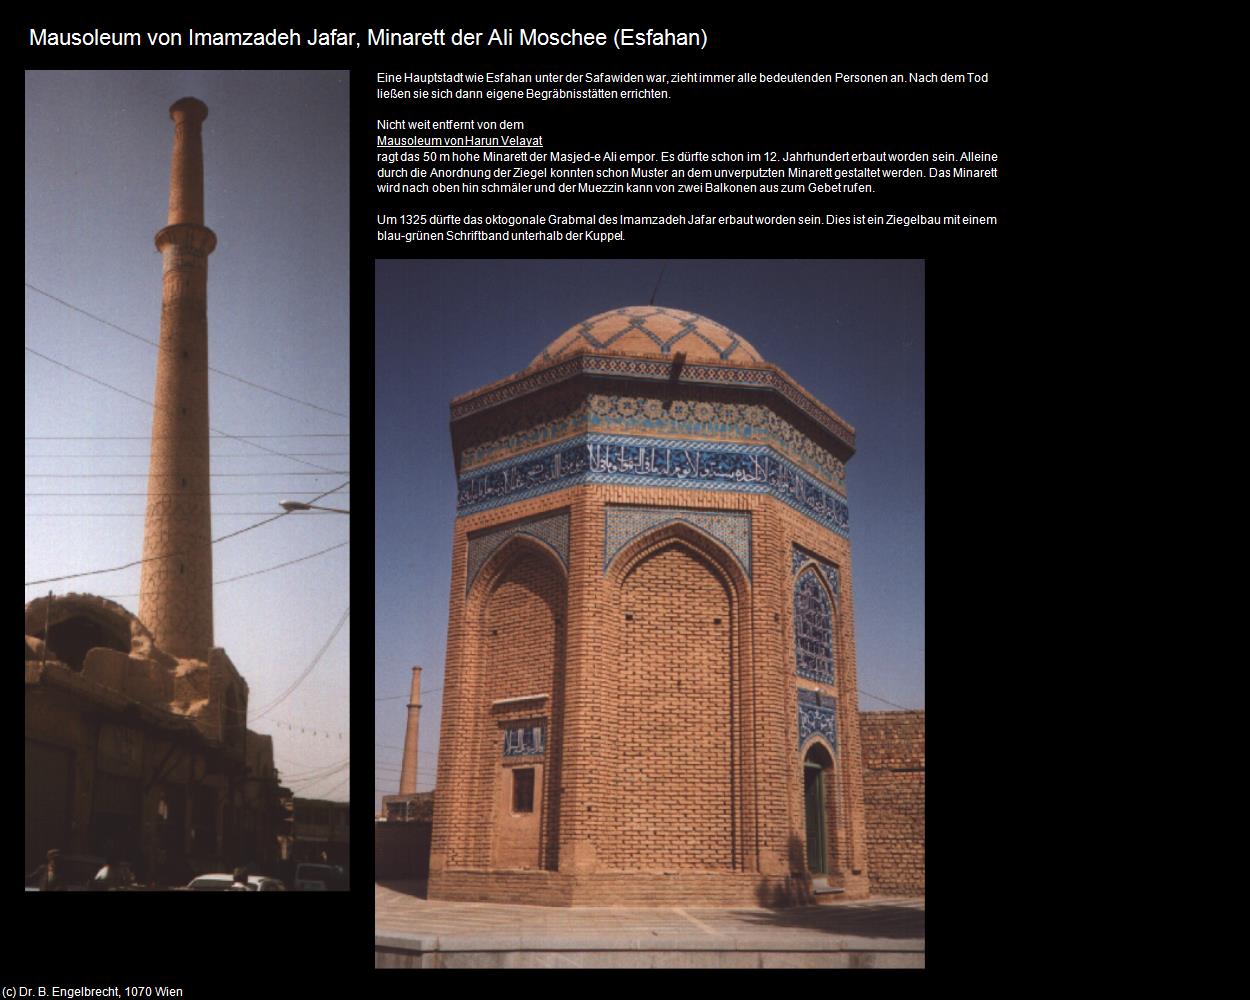 Mausoleum Imamzadeh Jafar, Minarett der Ali Moschee (Esfahan) in Iran(c)B.Engelbrecht